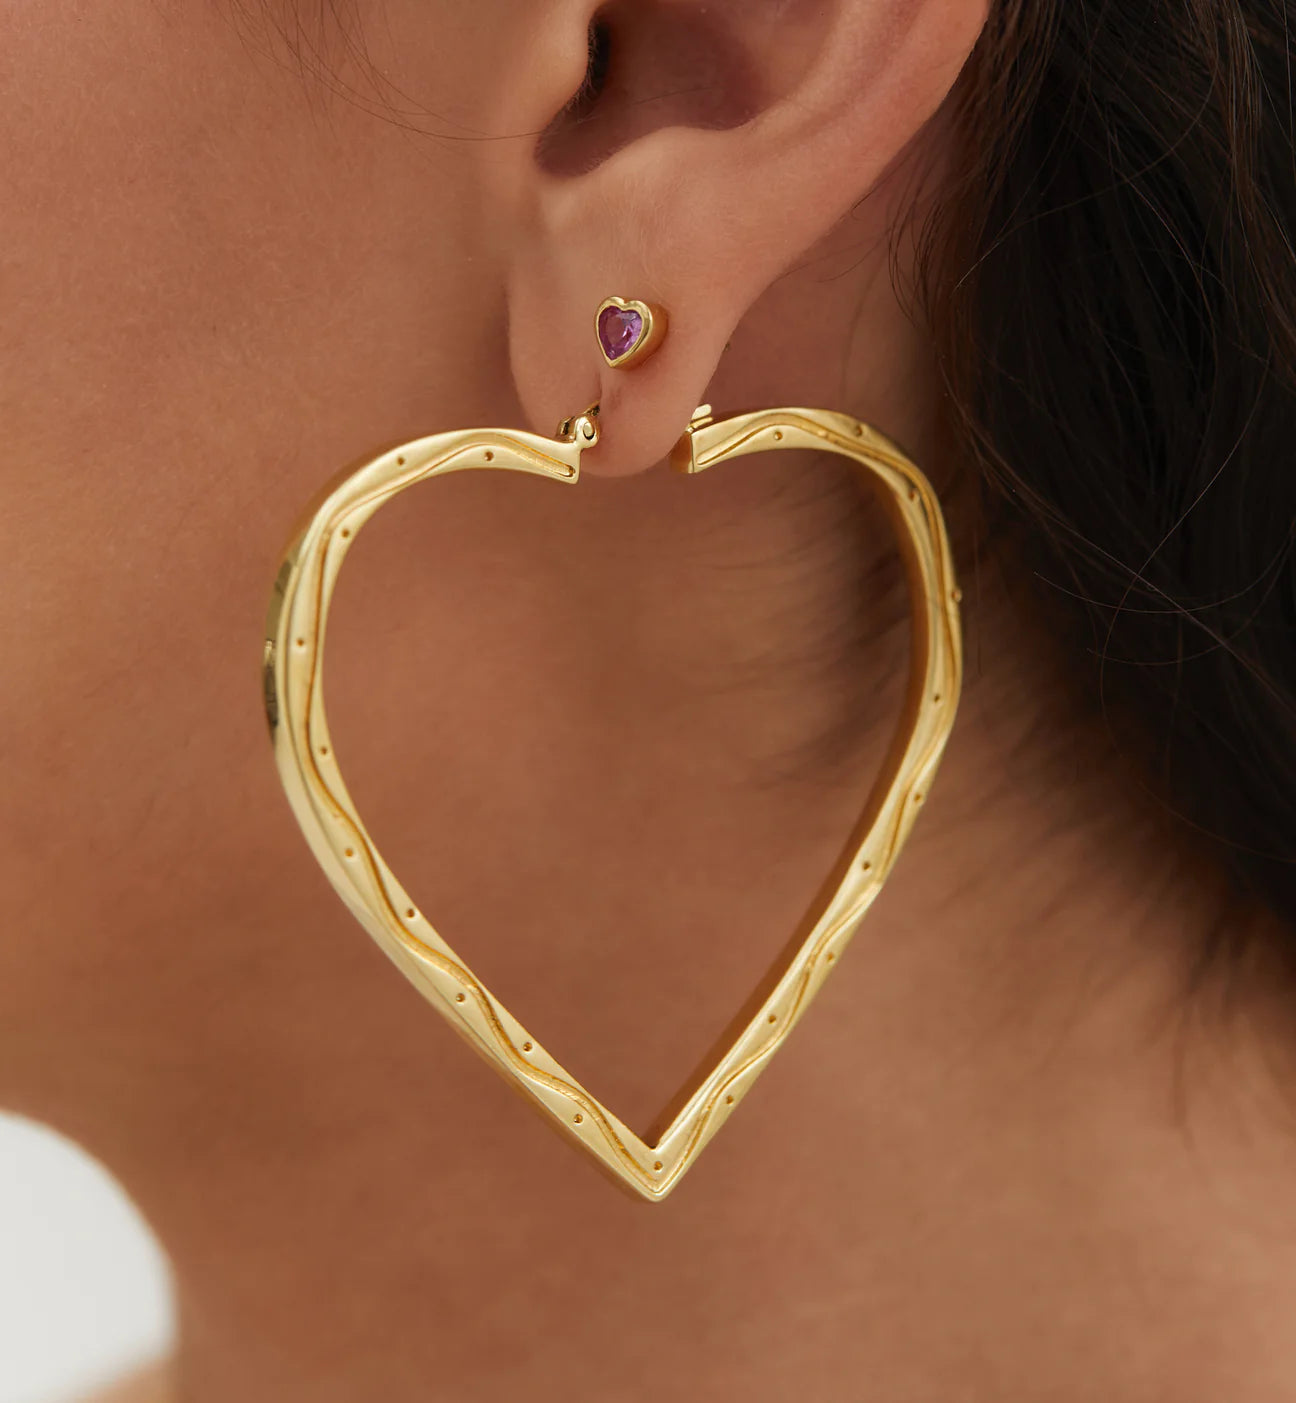 model wearing gold heart shaped hoop earrings